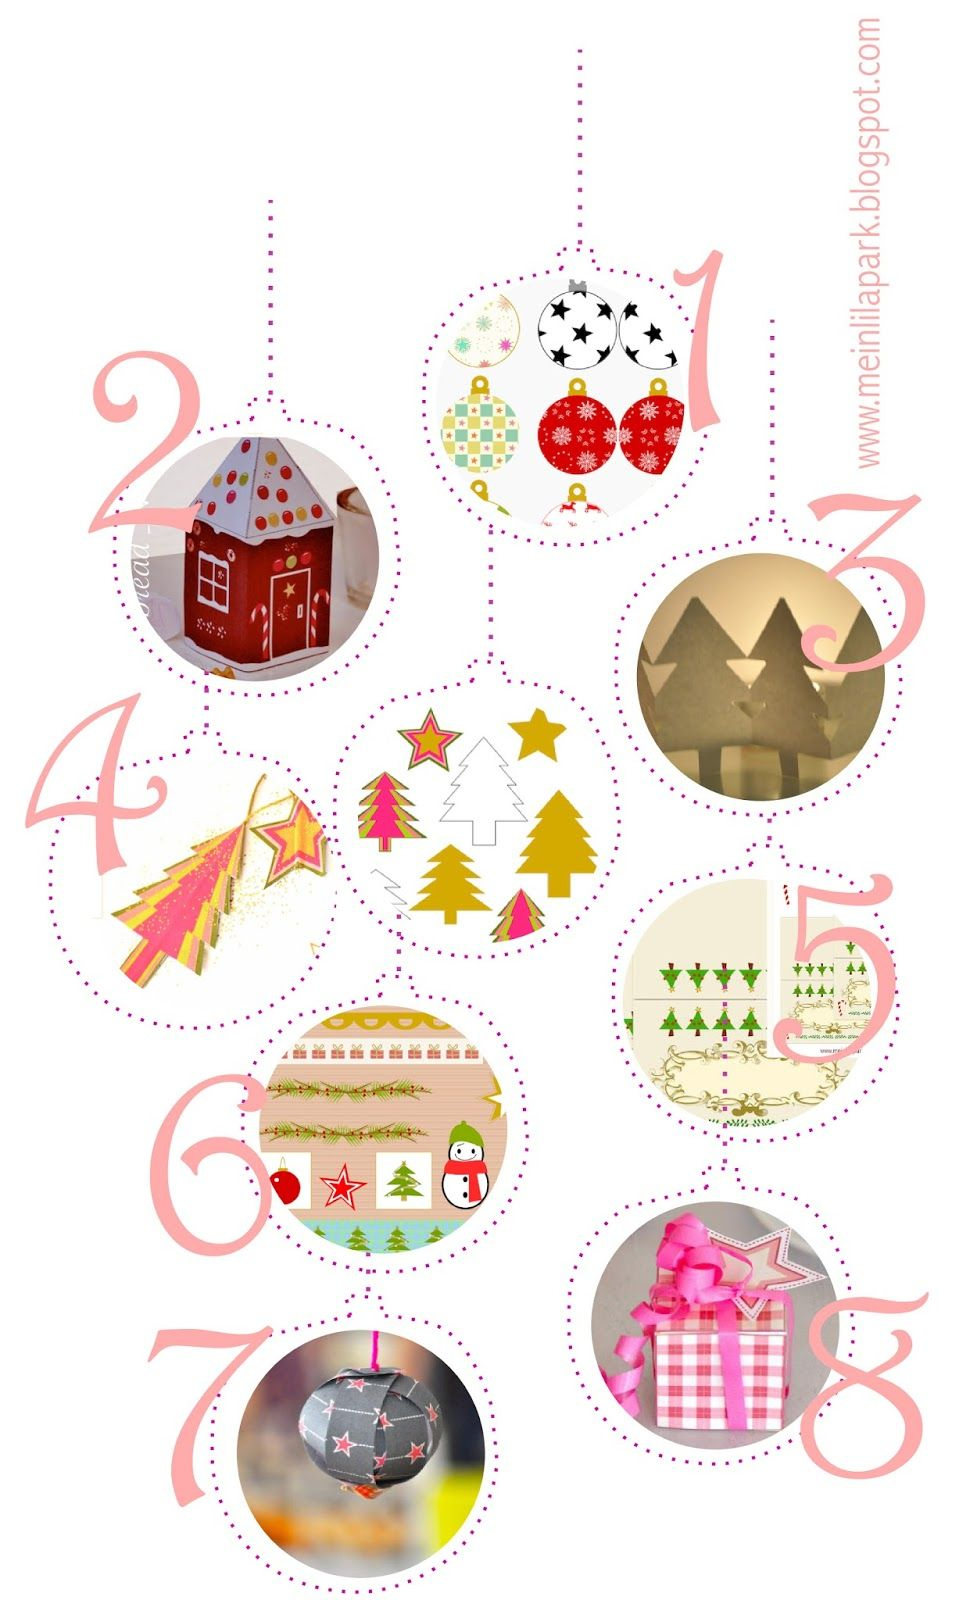 Free Printable Christmas Decorations - Ausdruckbare - Free Printable Christmas Ornaments